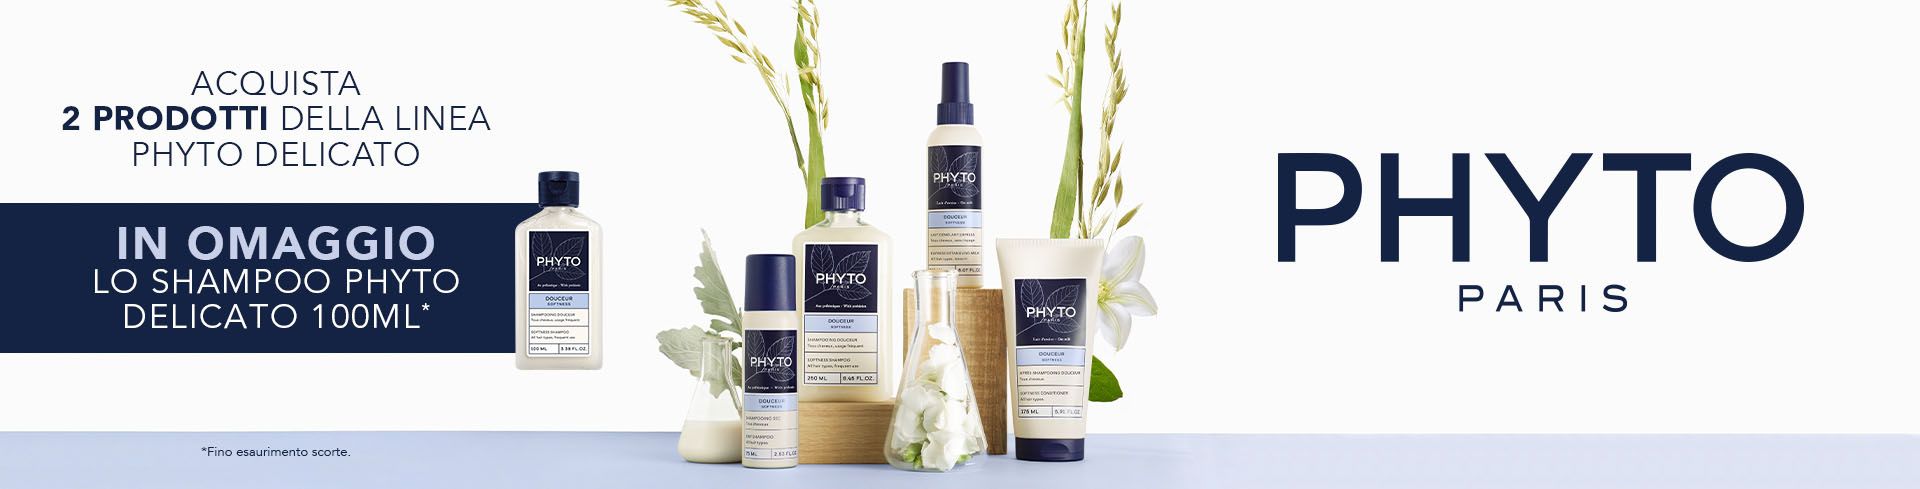 Acquista 2 prodotti della linea Phyto Delicato, in omaggio ricevi lo shampoo phyto delicato 100ml!